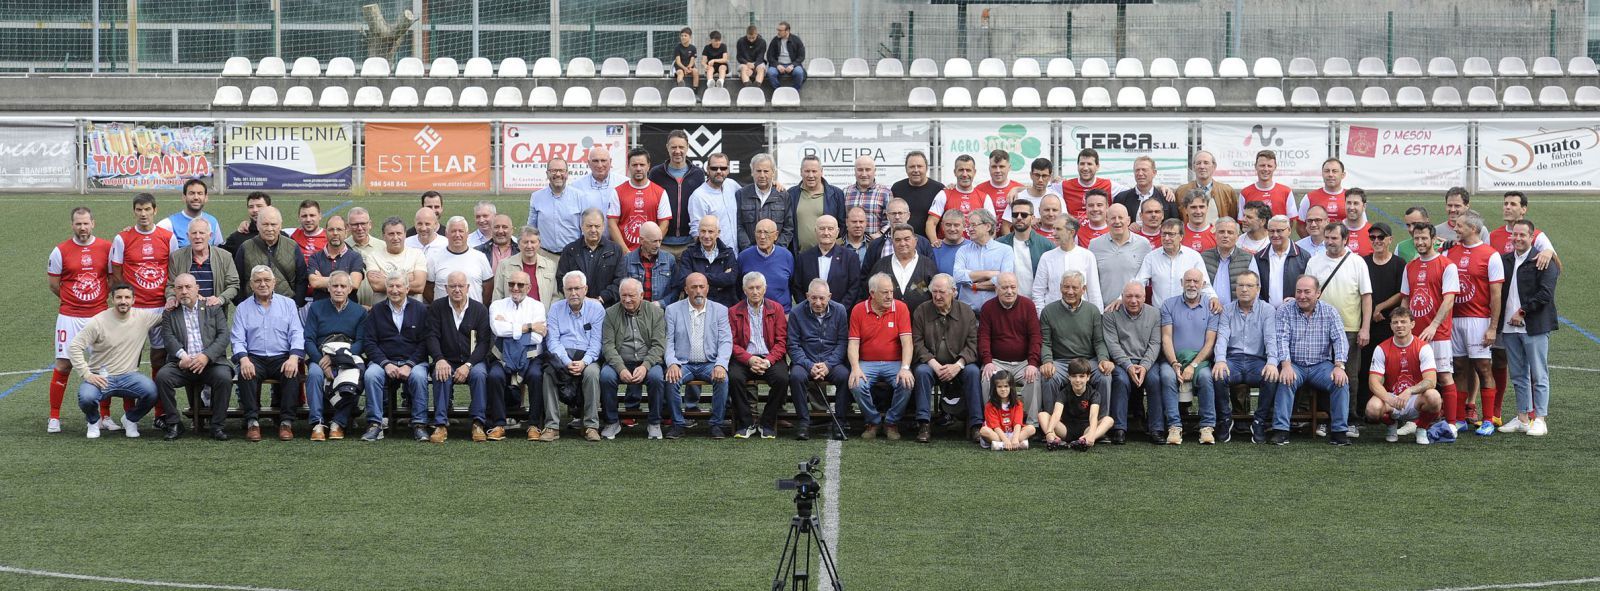 Jugadores de los cincuenta años de vida del Estradense Veteranos posan juntos en el Estadio Municipal de A Estrada. |  // BERNABÉ/JAVIER LALÍN